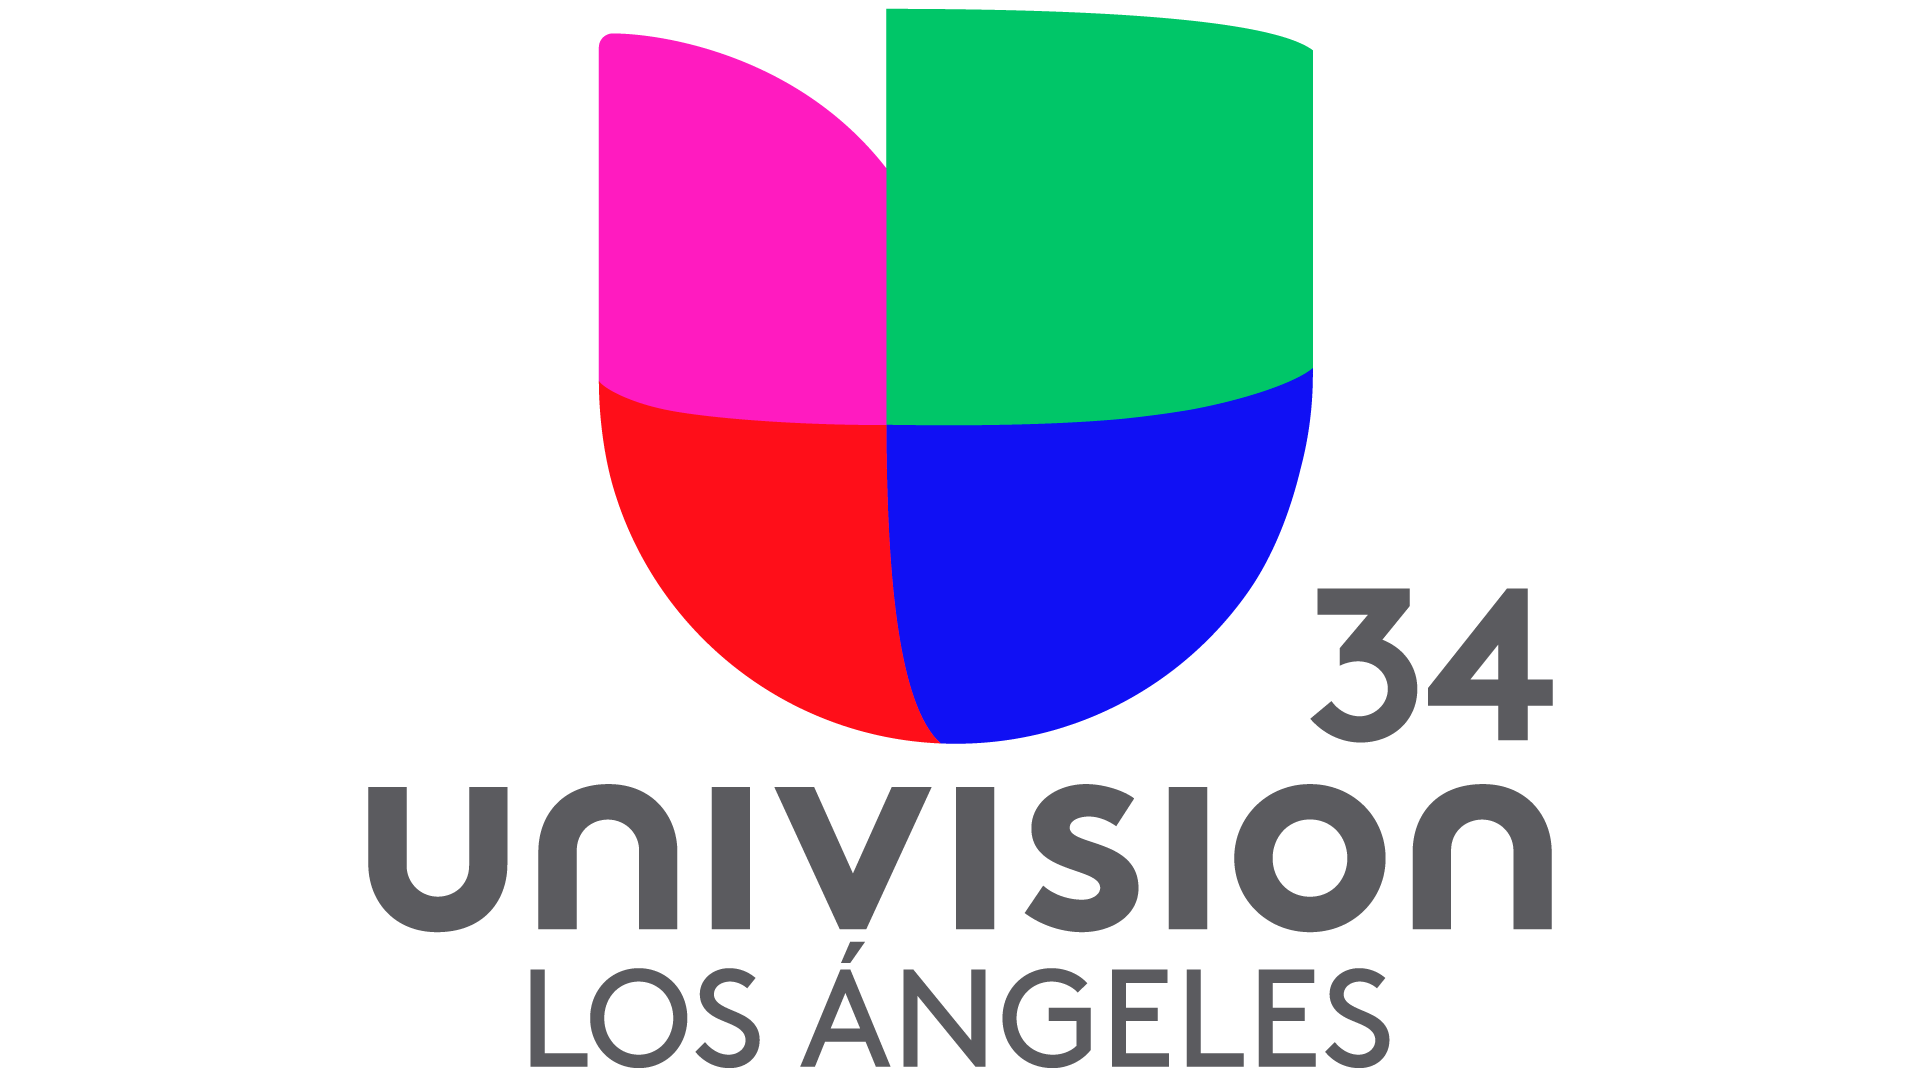 Univisión Los Ángeles En Vivo Online Teleame Directos Tv 4480